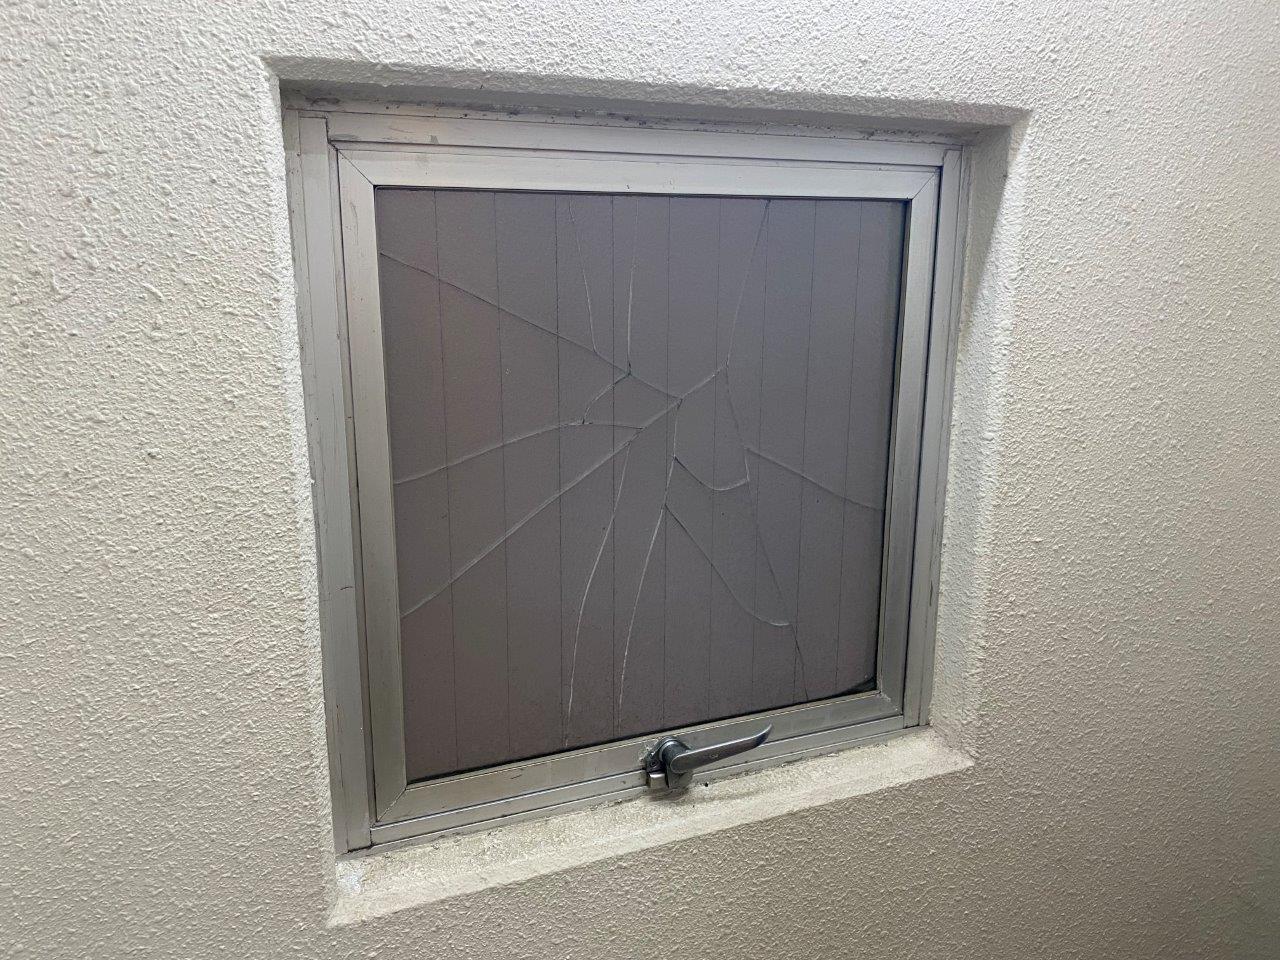 新潟市中央区にあるマンションの窓ガラスが割れたので修繕したいとお問い合わせを頂きました